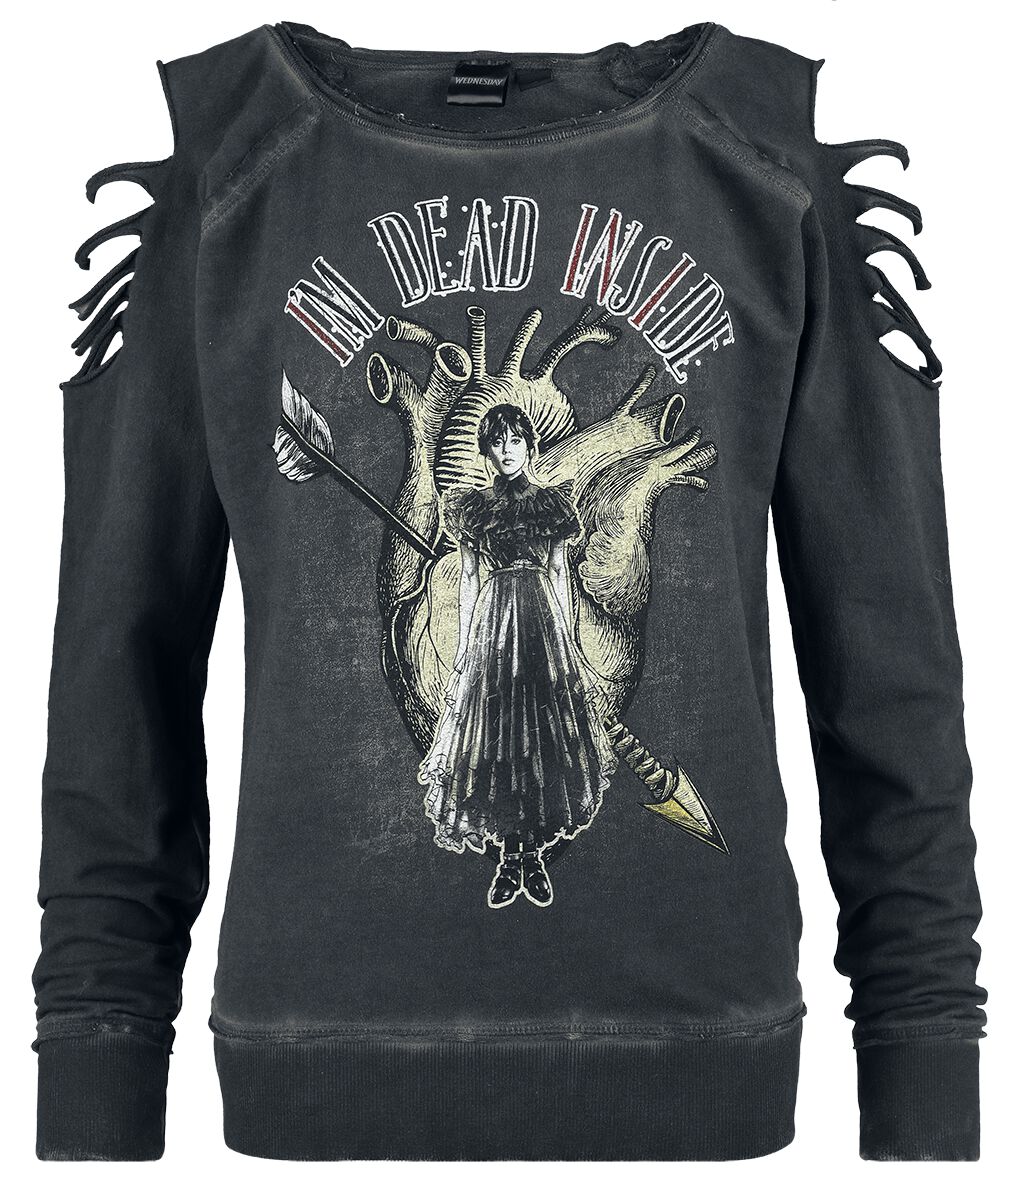 Wednesday Sweatshirt - I`m dead inside - S bis XXL - für Damen - Größe S - dunkelgrau  - EMP exklusives Merchandise!